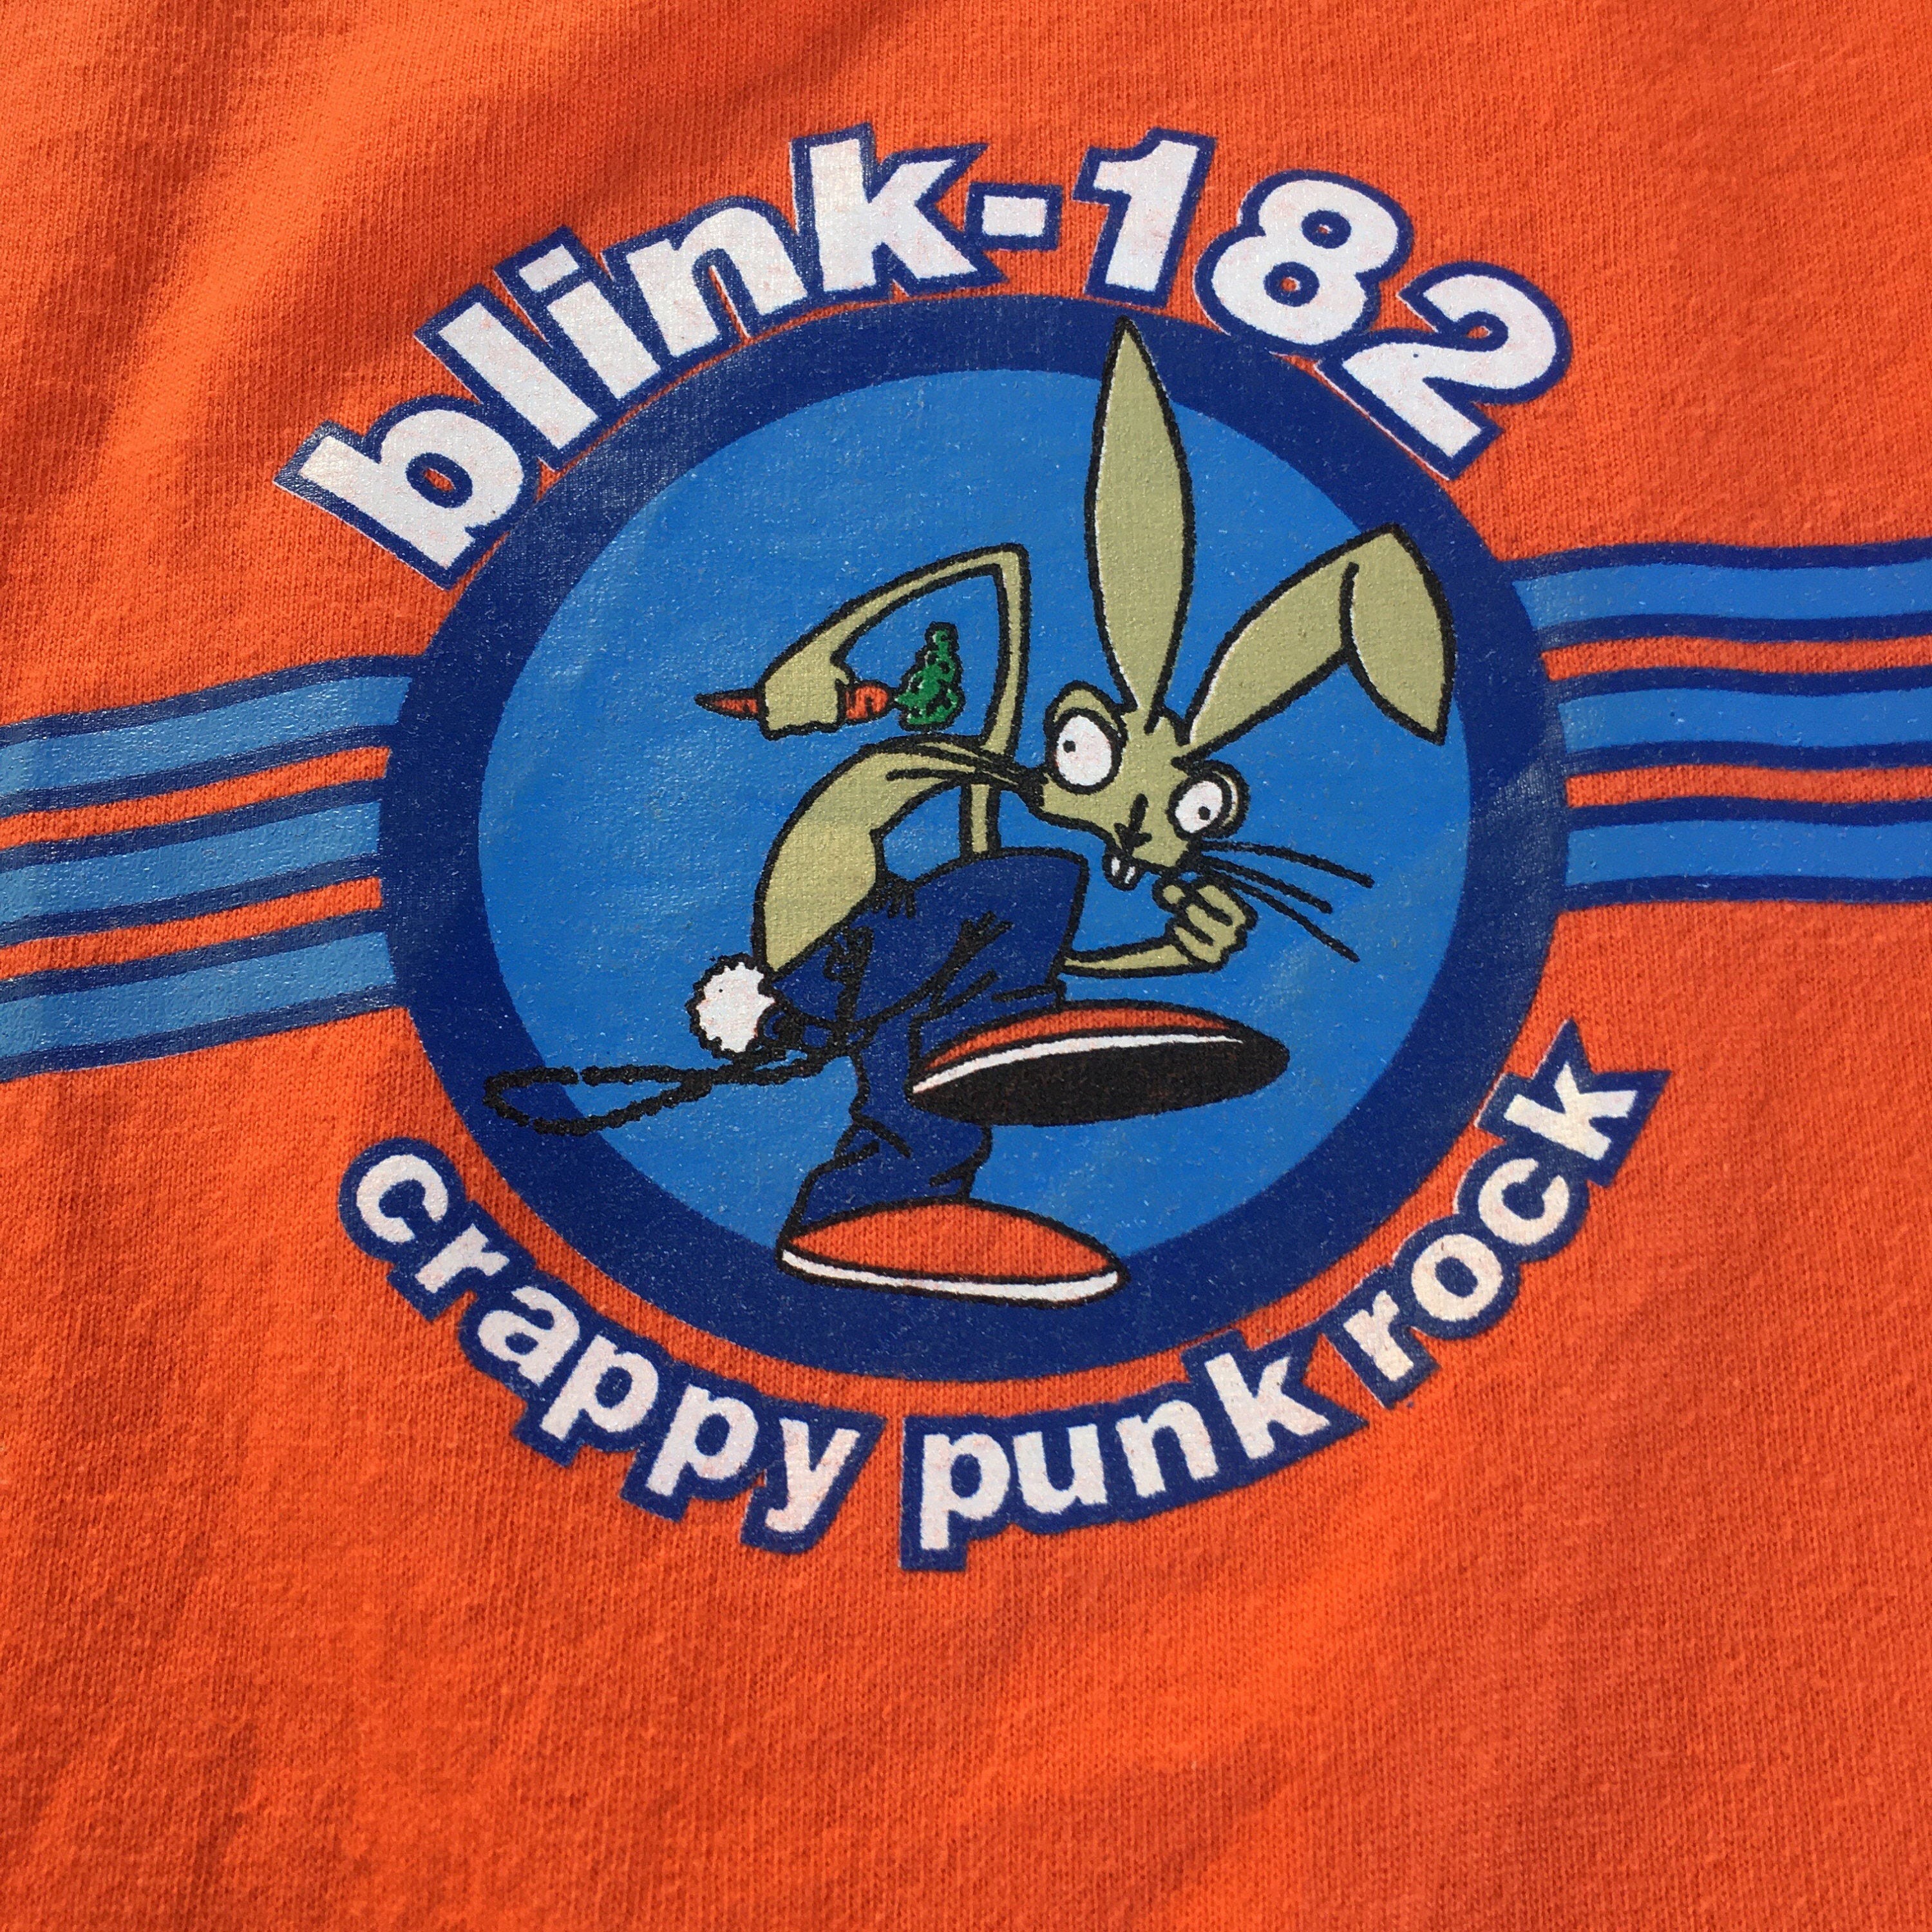 BLINK 182 CRAPPY PUNK ROCK TEE / 00S